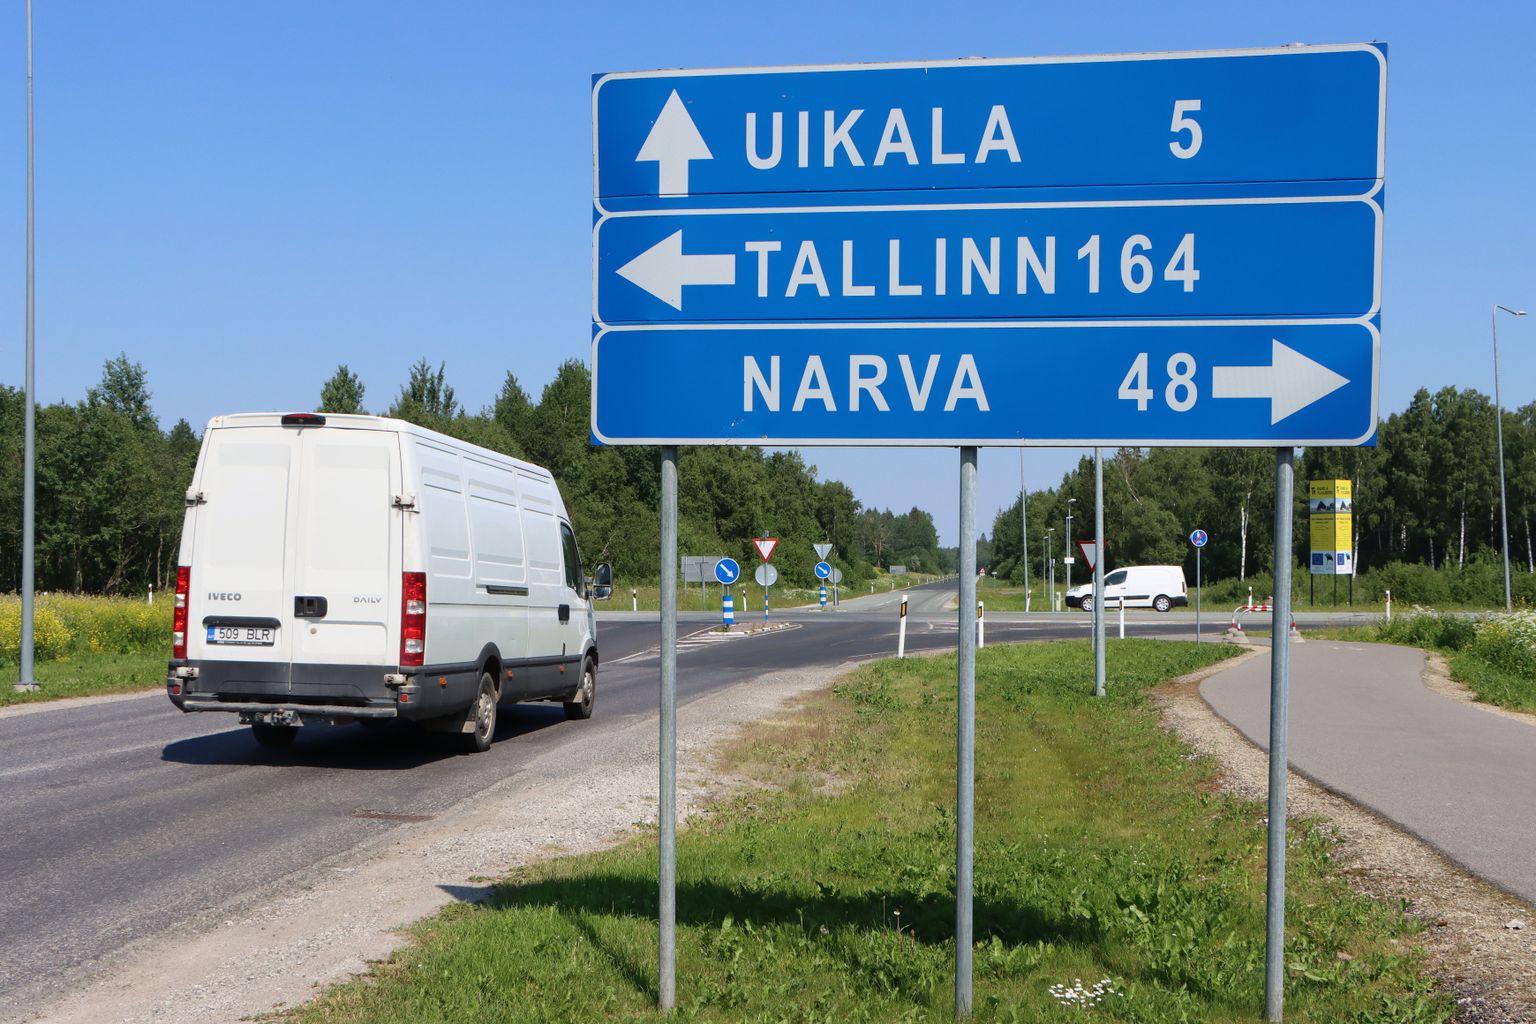 Ohtlik ristmik Jõhvi põhjaservas, kus Tallinna-Narva maanteega ristuvad Jaama tänav ja Uikala tee.